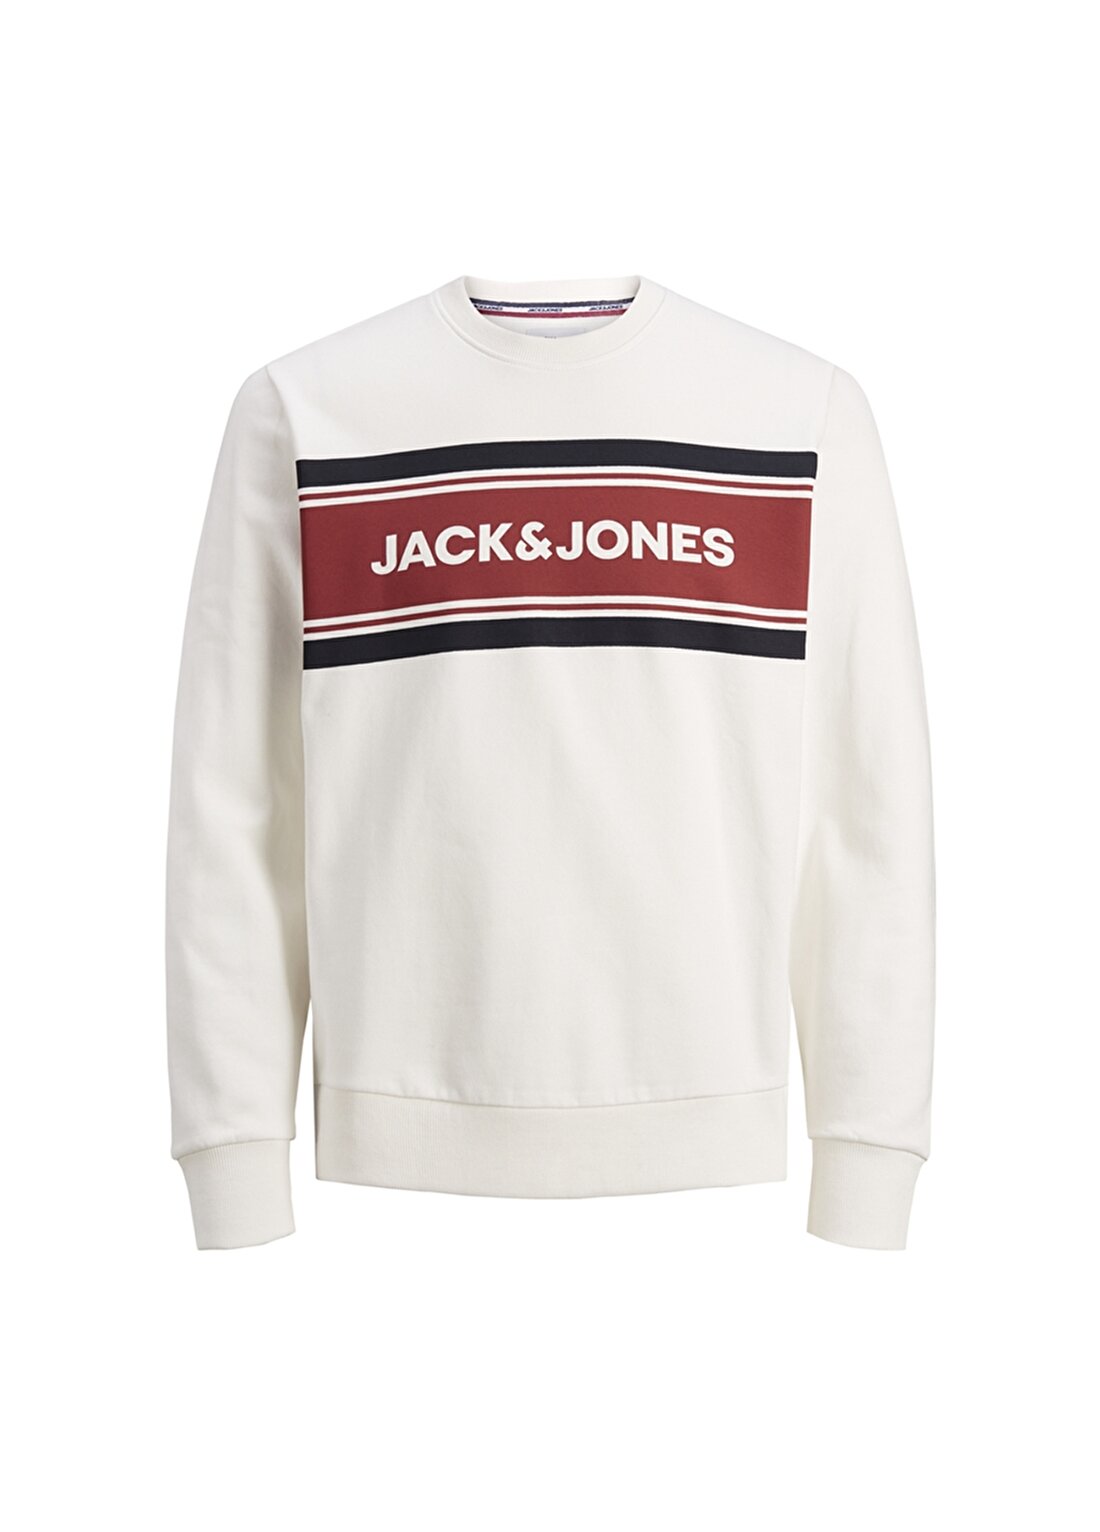 Jack & Jones Newshakedown Sweatshirt